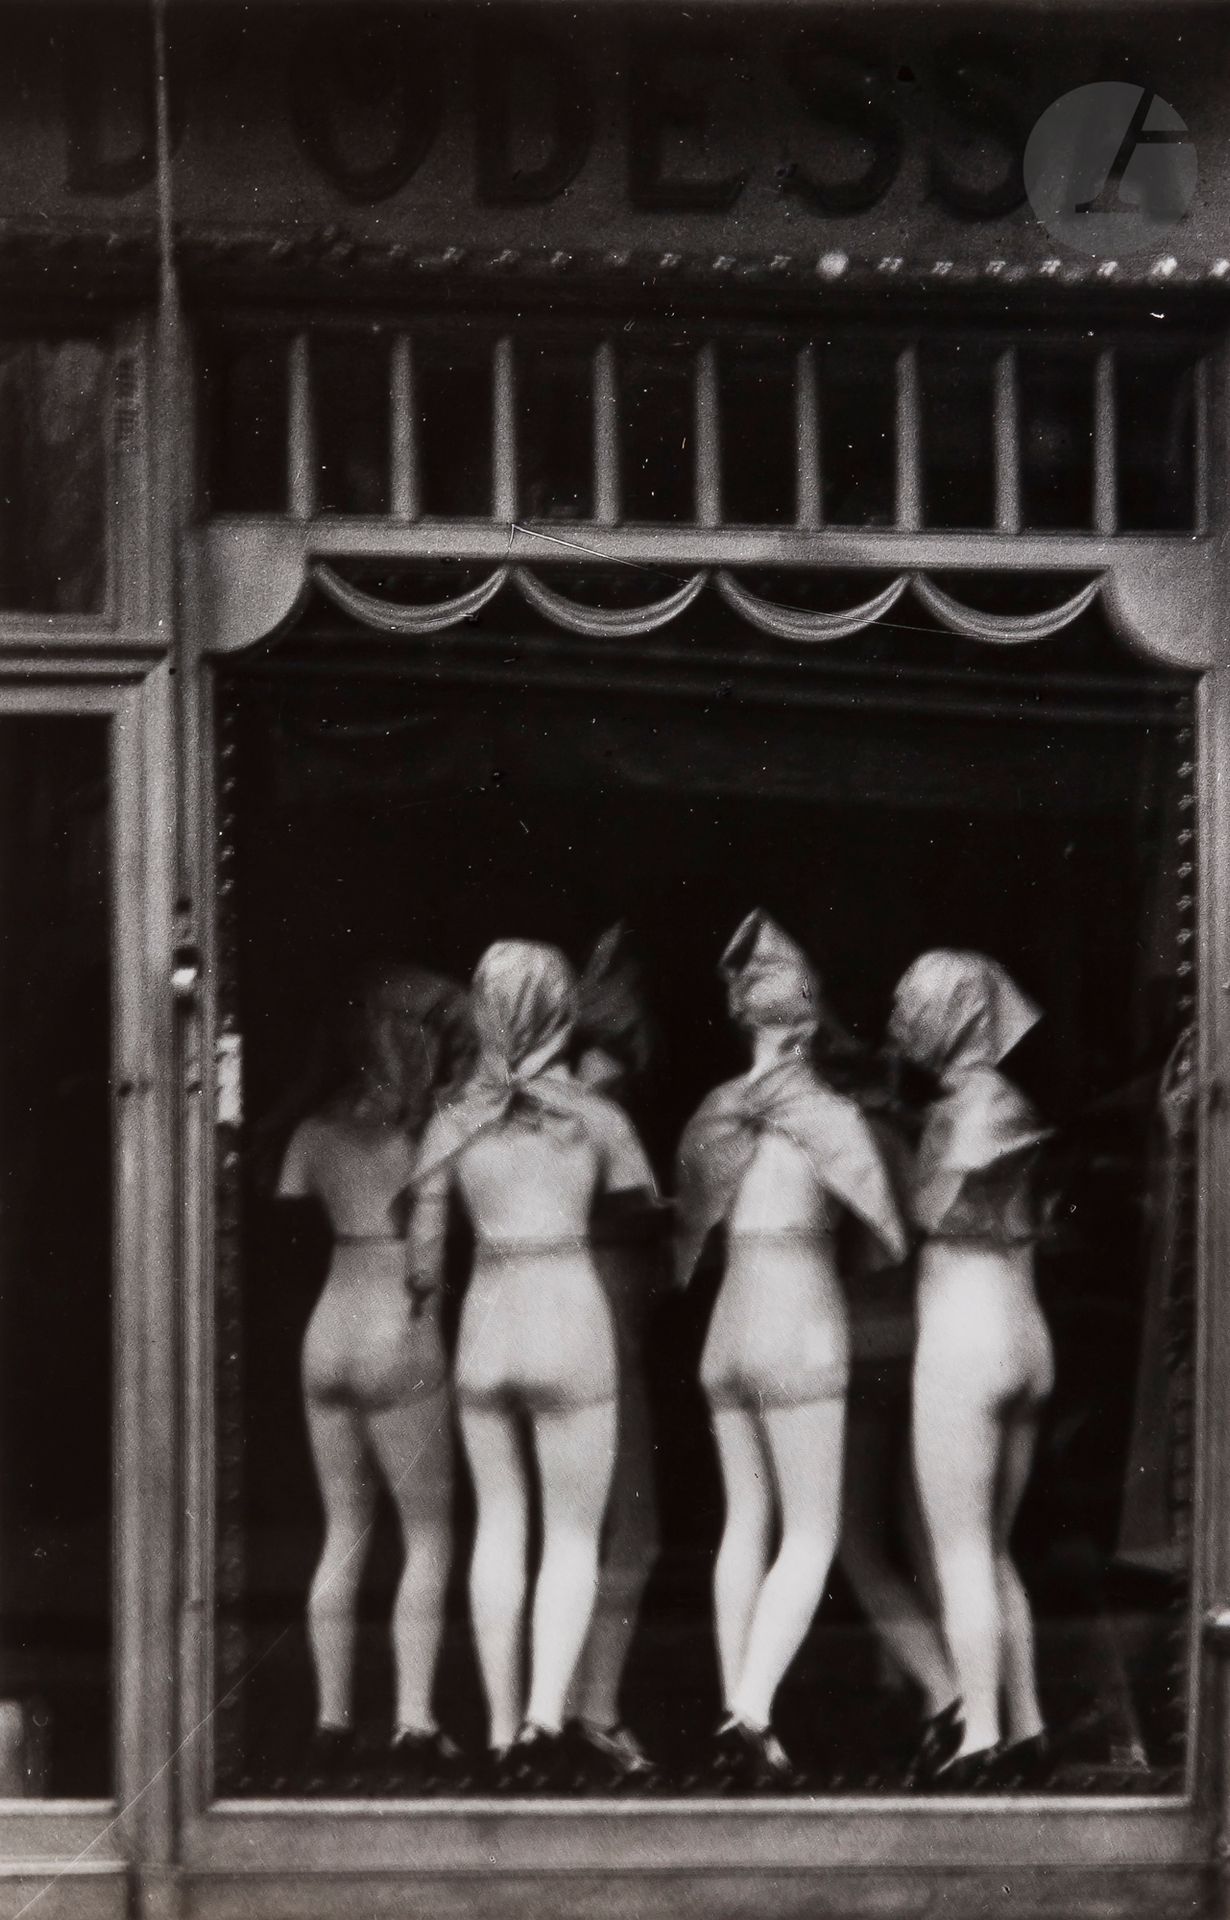 Null 安德烈-凯尔泰斯(1894-1985)
橱窗装饰。巴黎，1925年。 
银质印刷品（约1965年）。盖有 "摄影：安德烈-凯尔泰斯 "的印章，背面有摄&hellip;